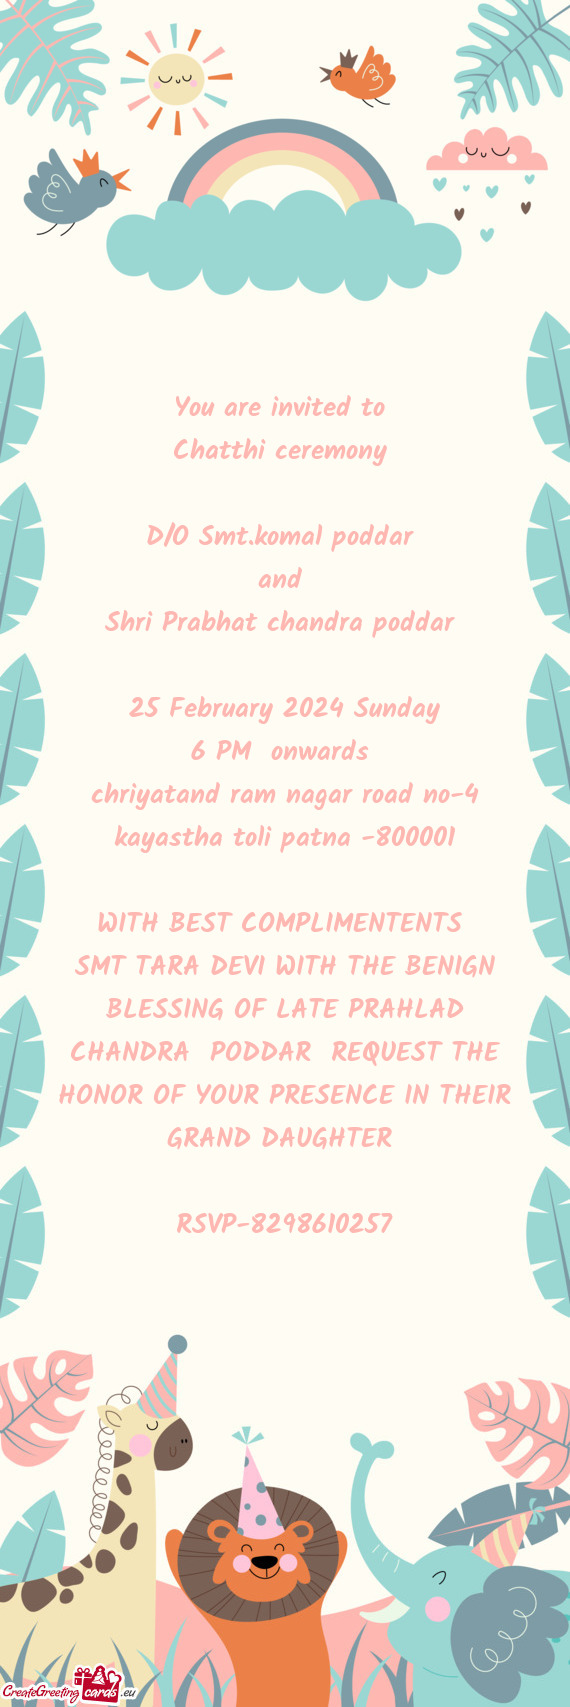 Shri Prabhat chandra poddar